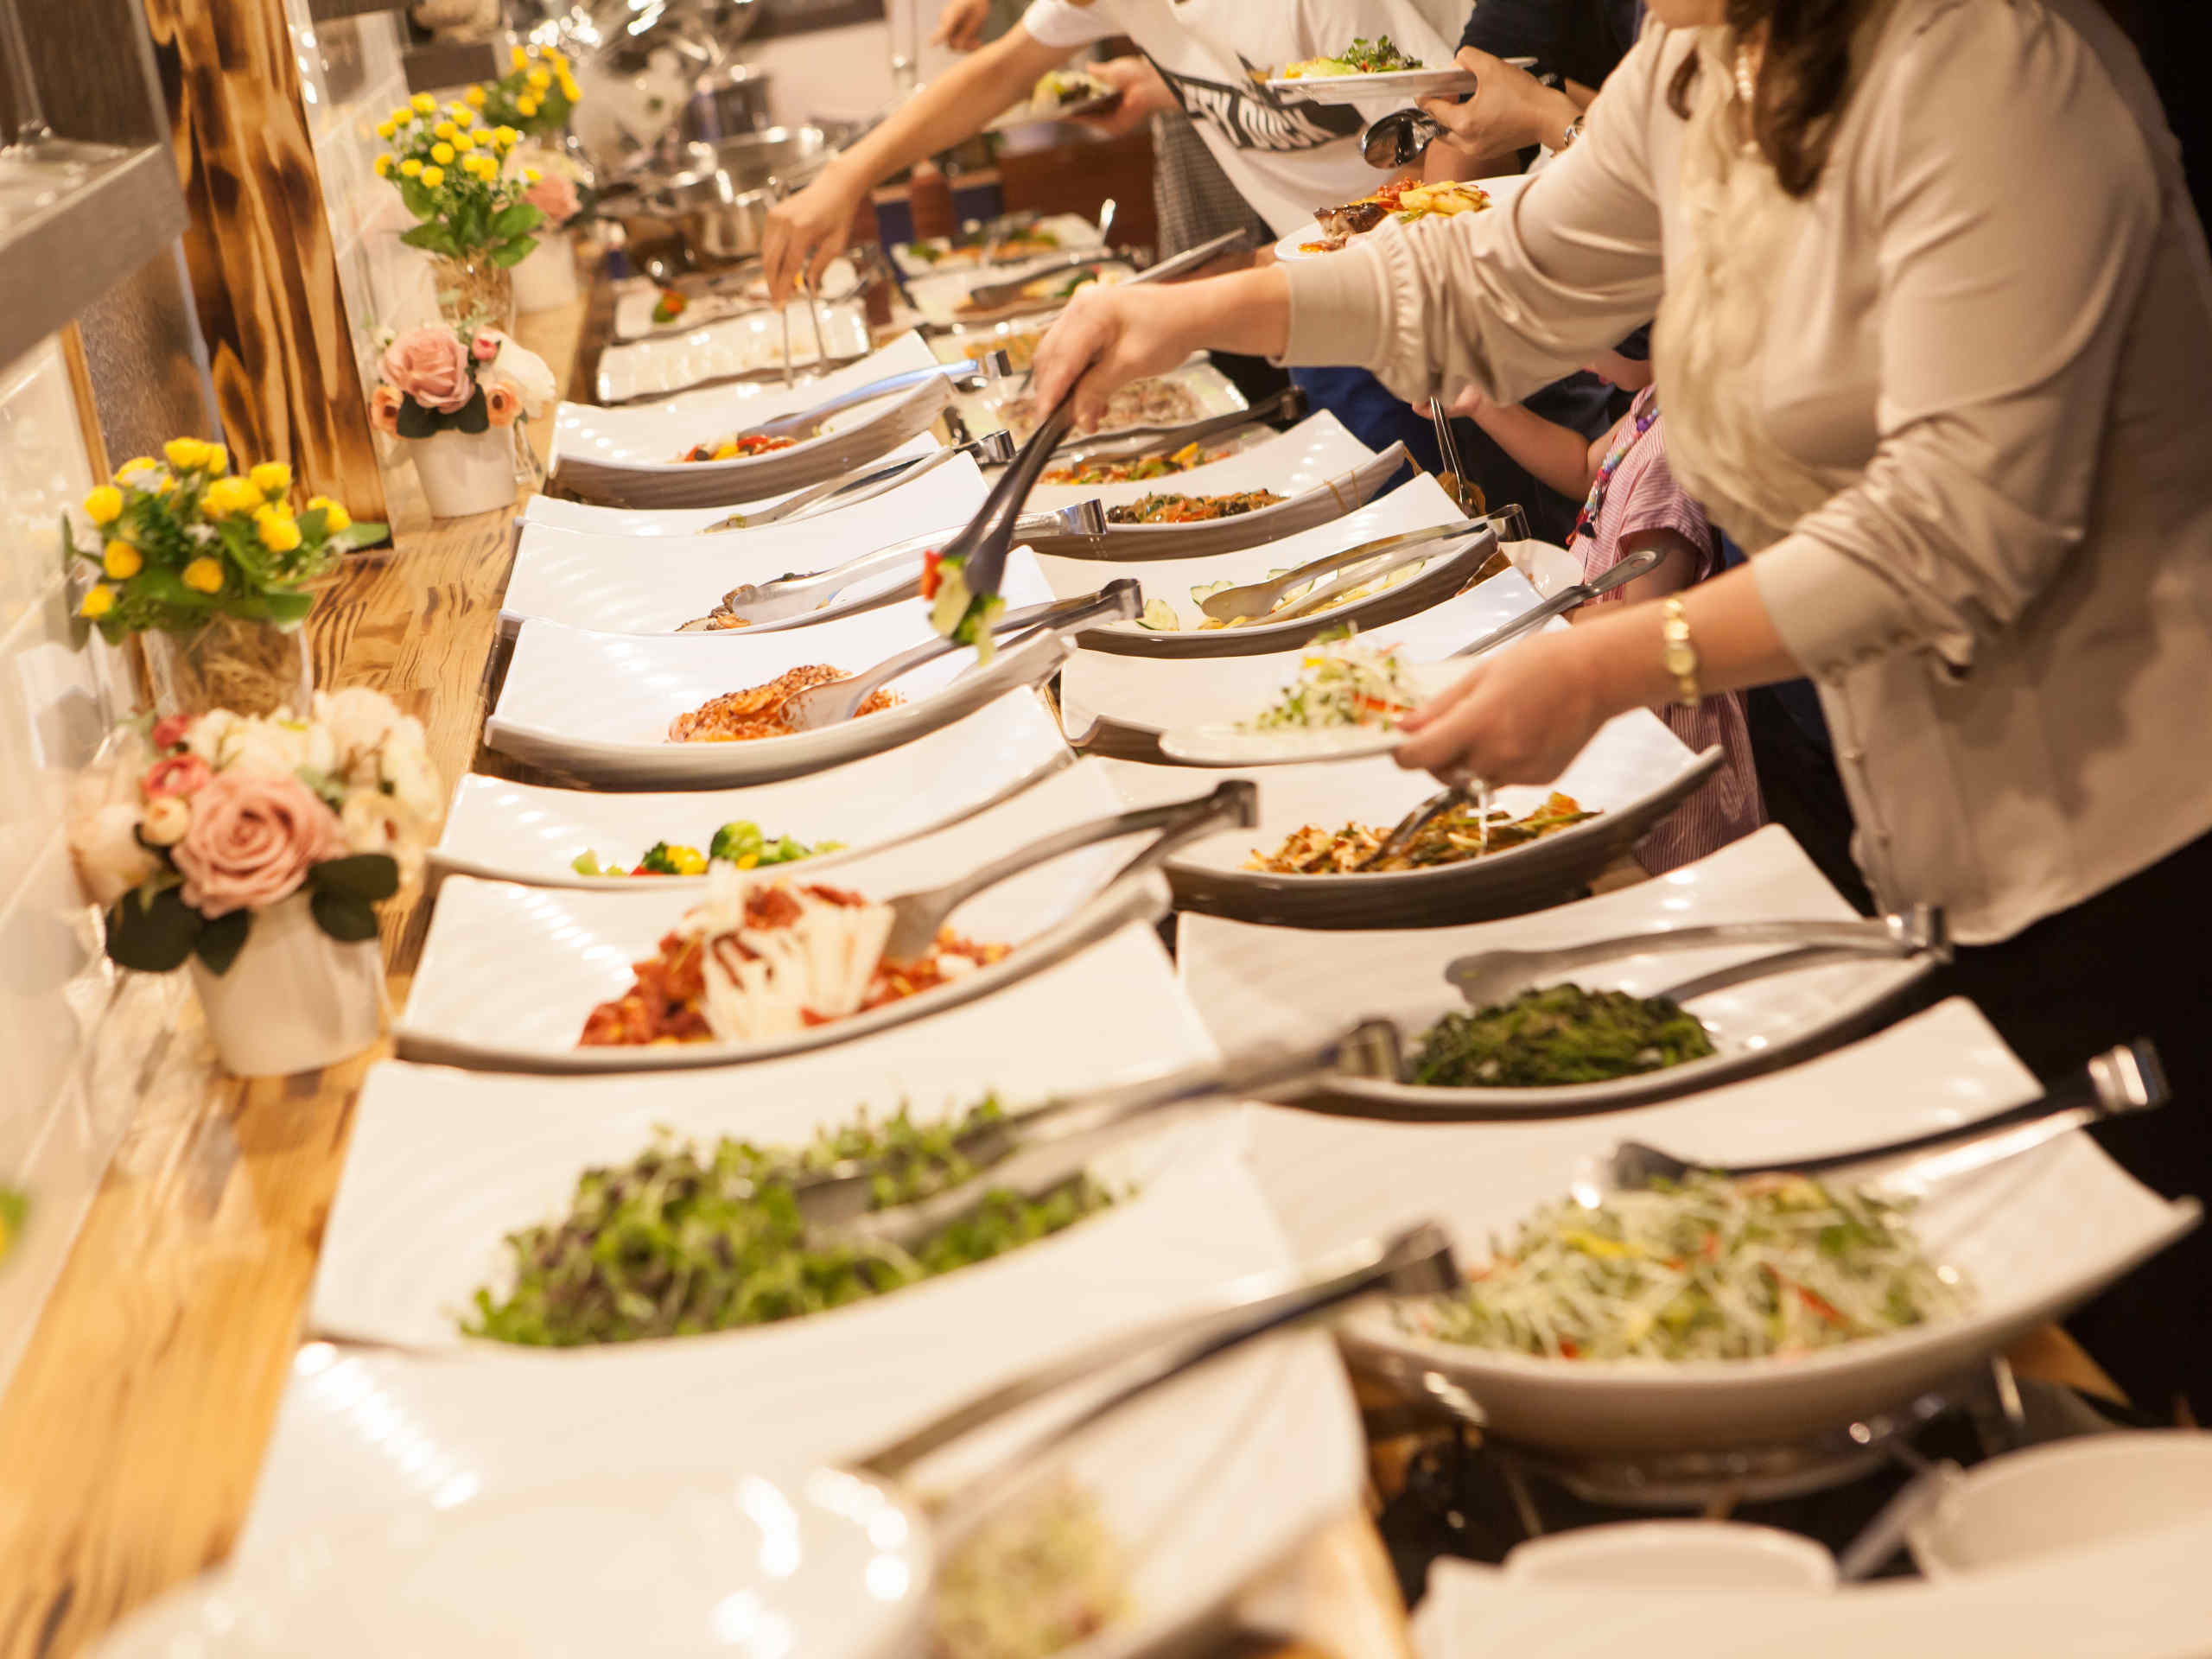 Caterings und Feierlichkeiten können zum Umsatzbringer werden. © ally j / Pixabay